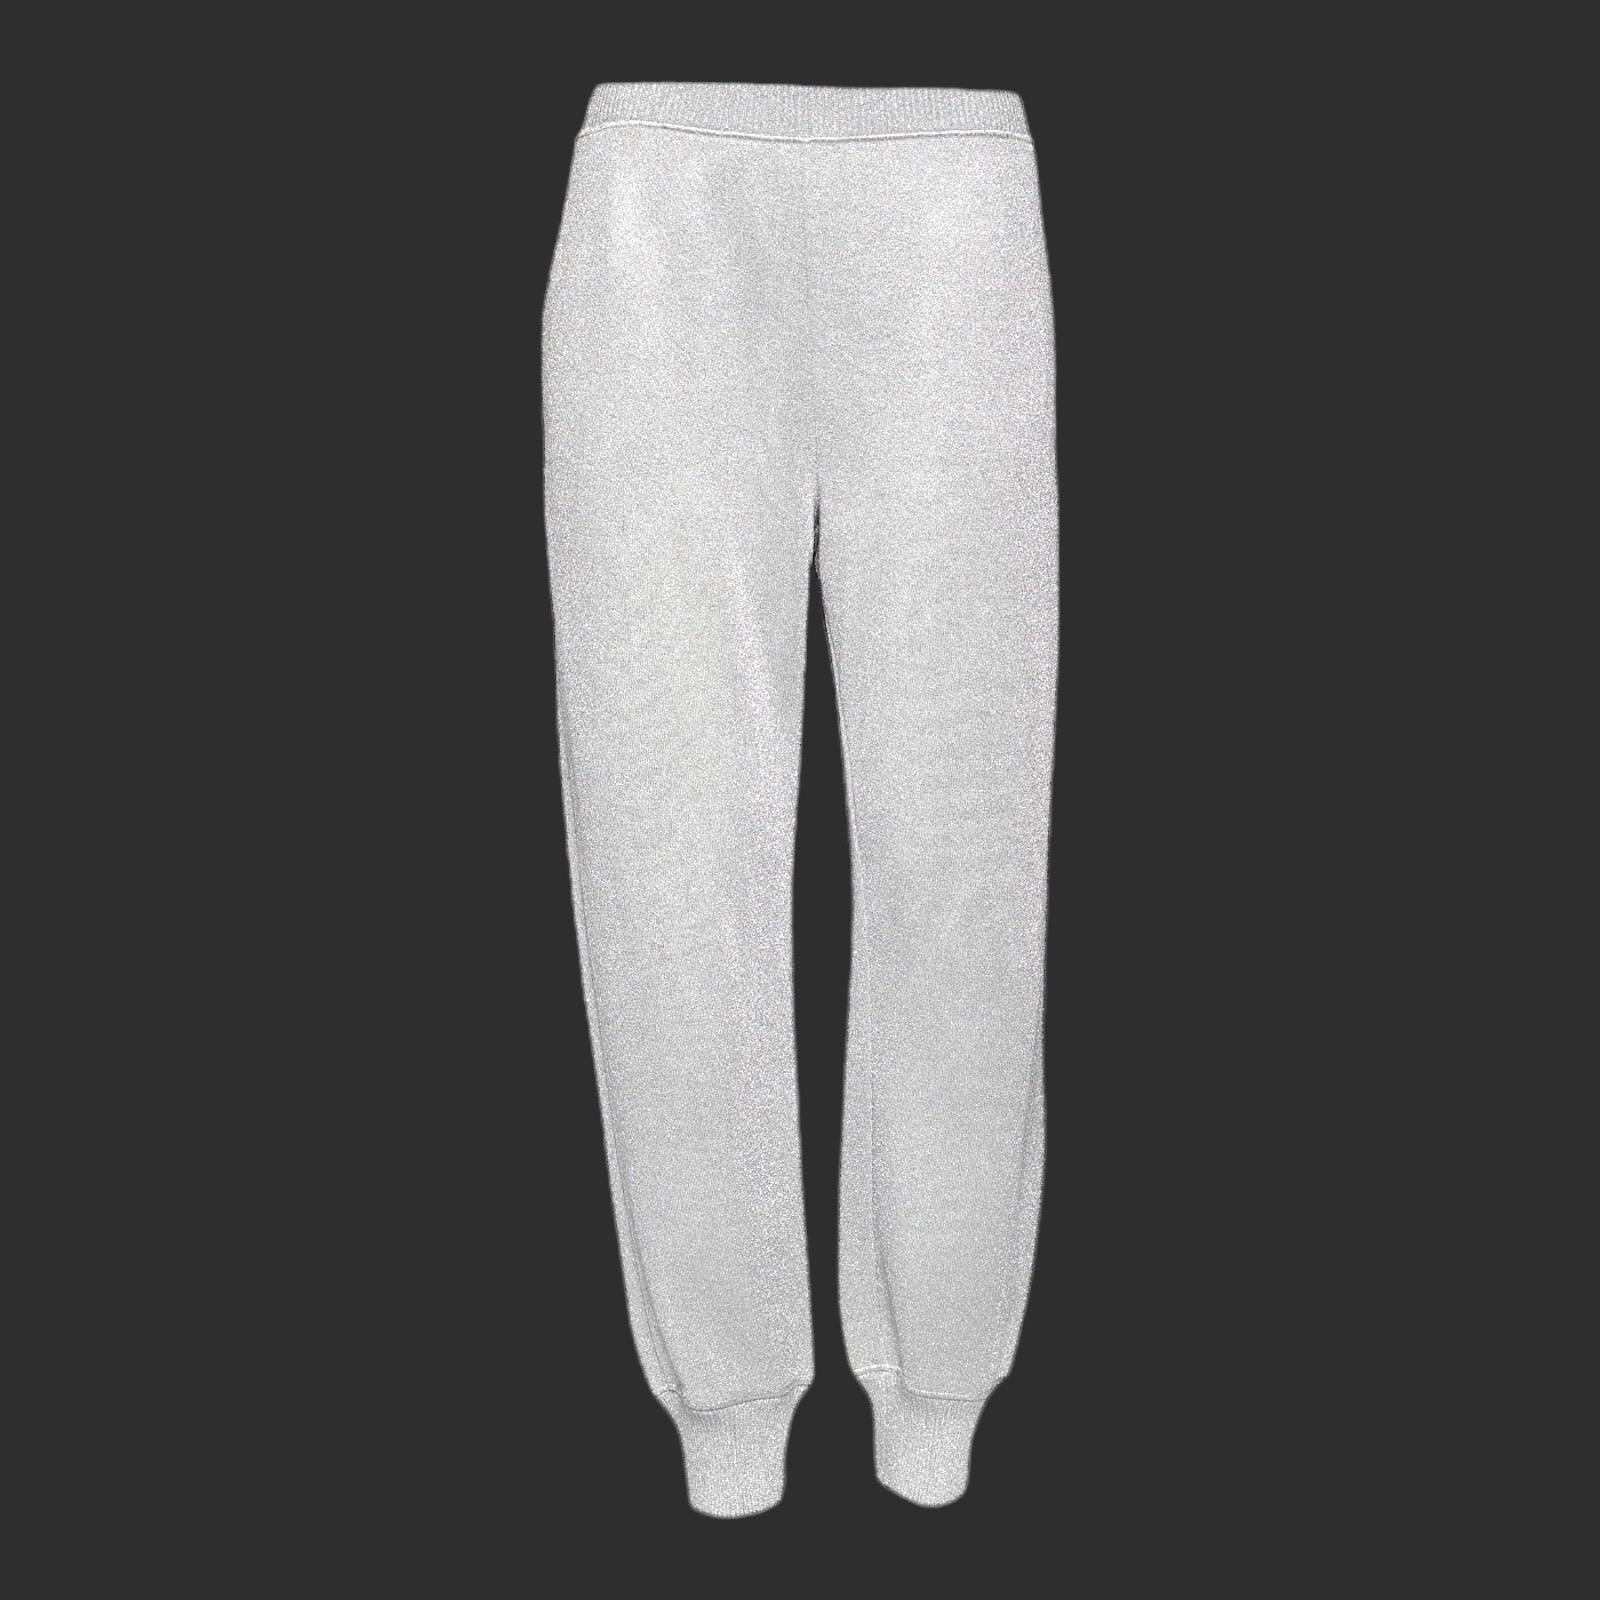 Le pantalon en tricot crocheté emblématique de Missoni est conçu pour une coupe ample flatteuse. 

Ce pantalon de survêtement gris de Missoni est confectionné en maille douce avec des fils métalliques pour un soupçon d'éclat holographique.


Superbe